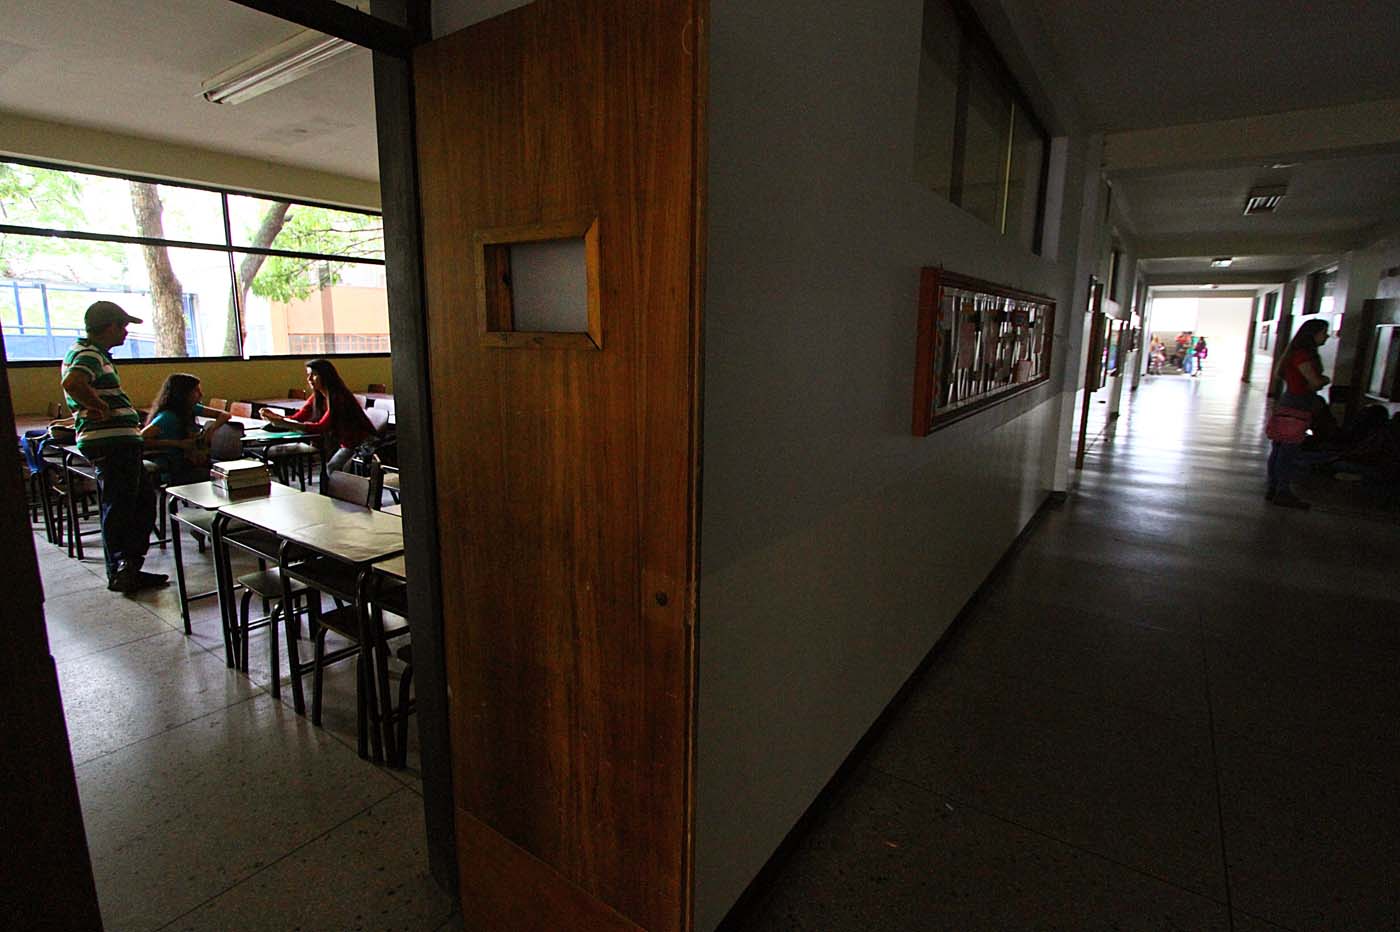 La crisis económica está paralizando las universidades venezolanas